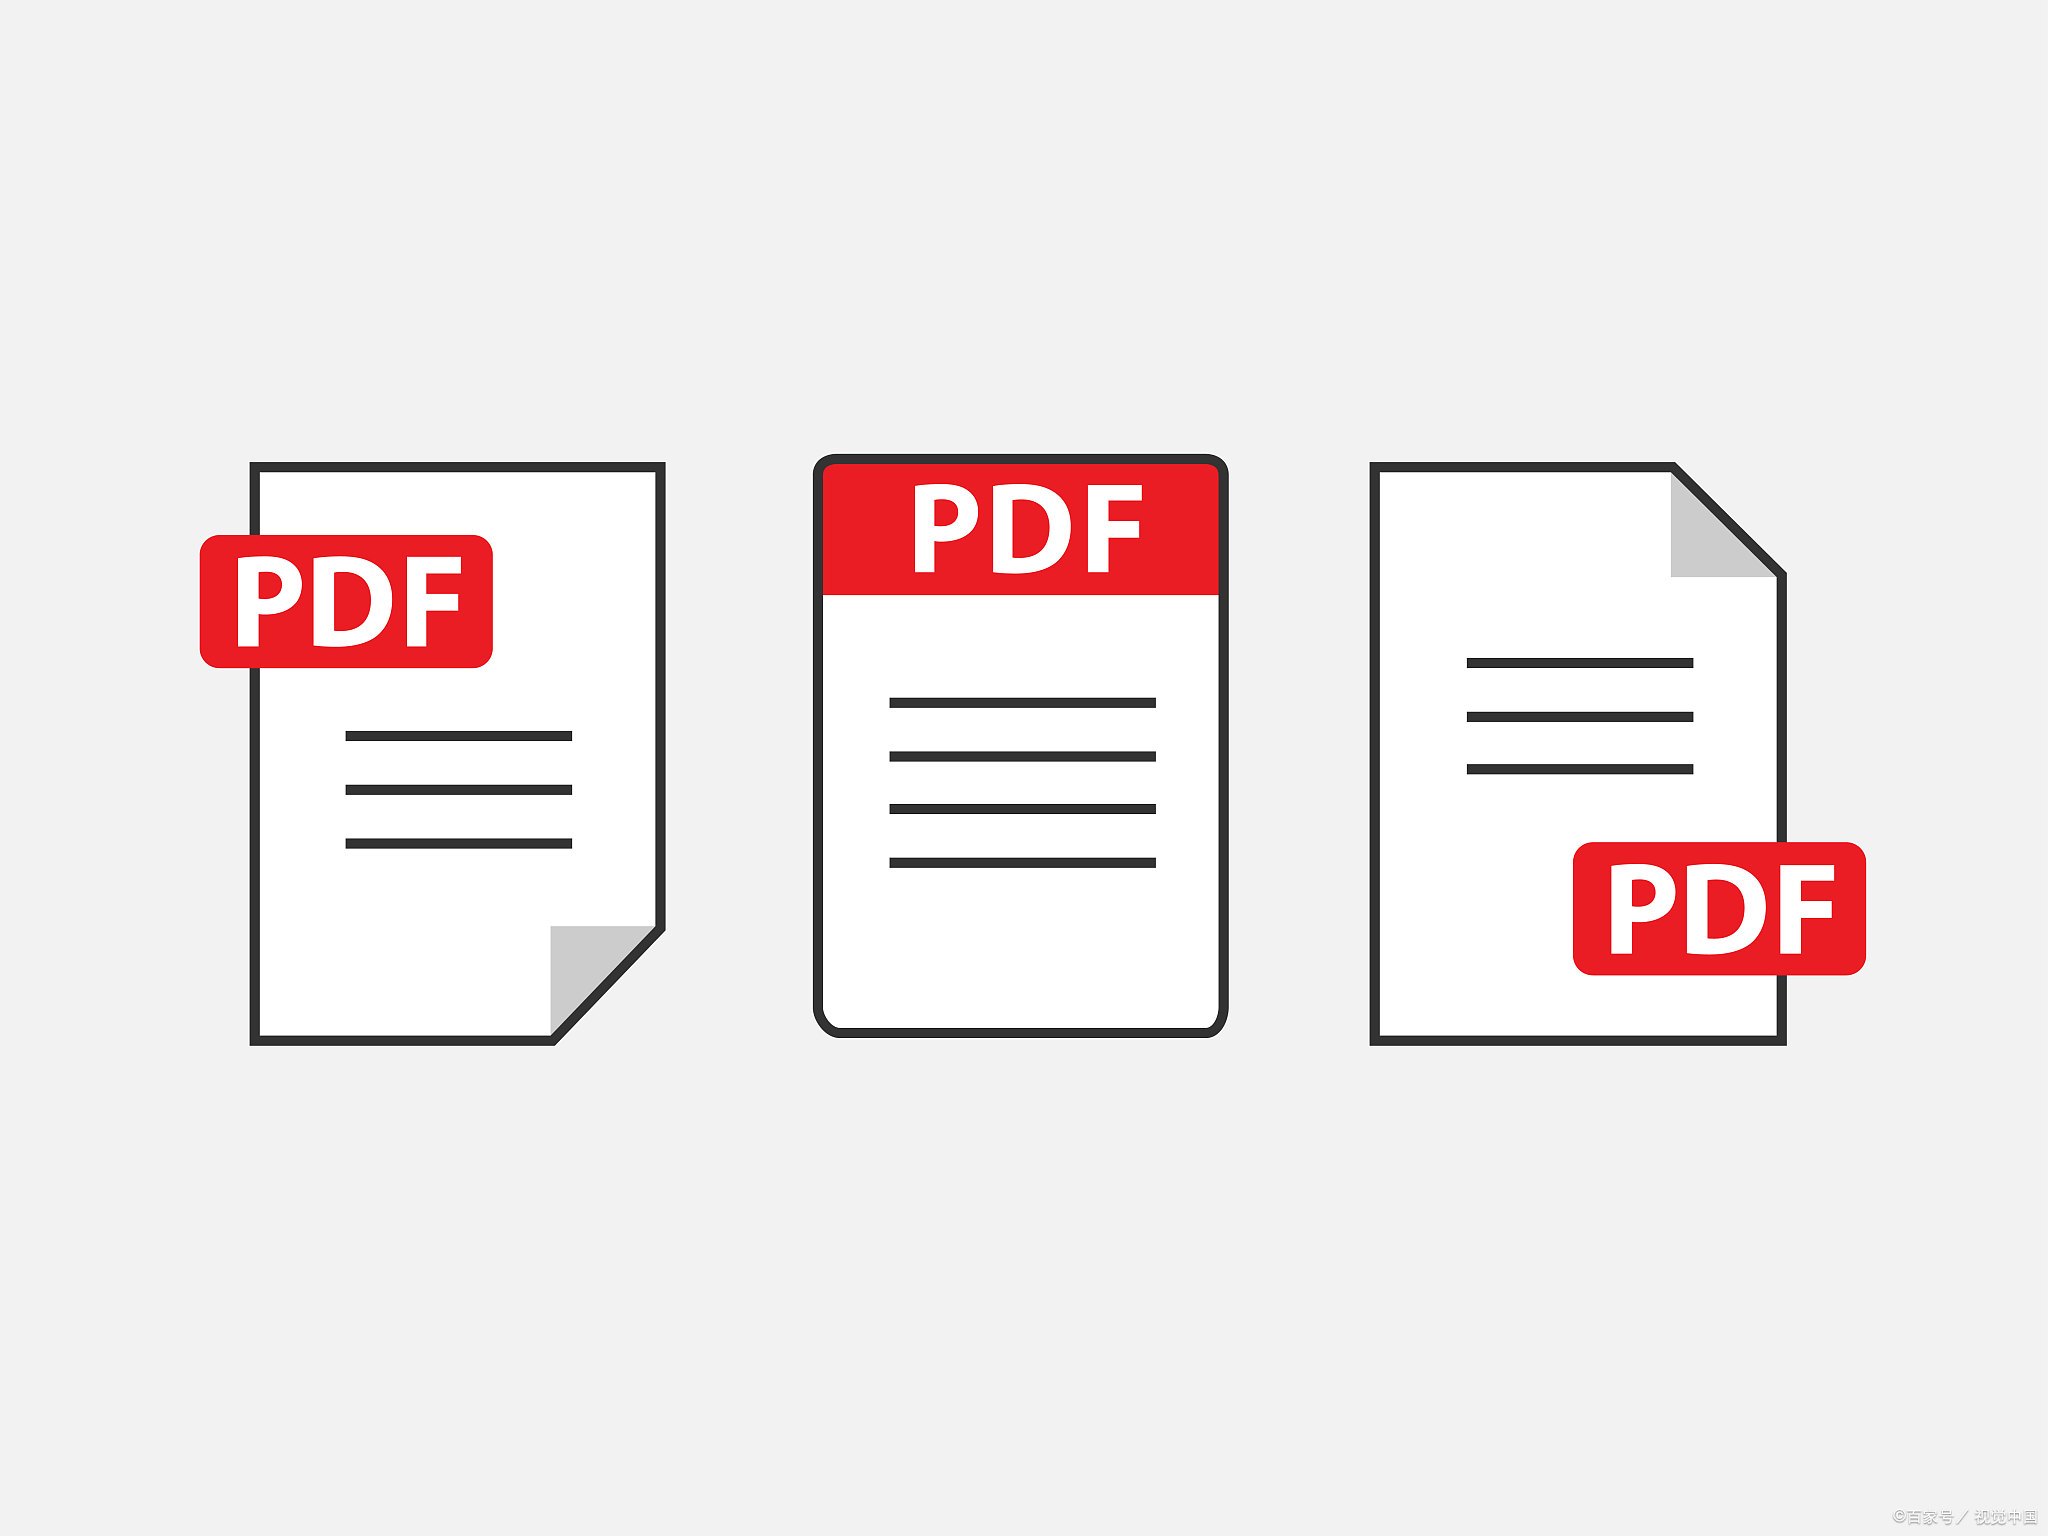 5个实用的PDF自动化办公操作~1行Python代码搞定：解密、加水印、PPT/Word/TxT转PDF